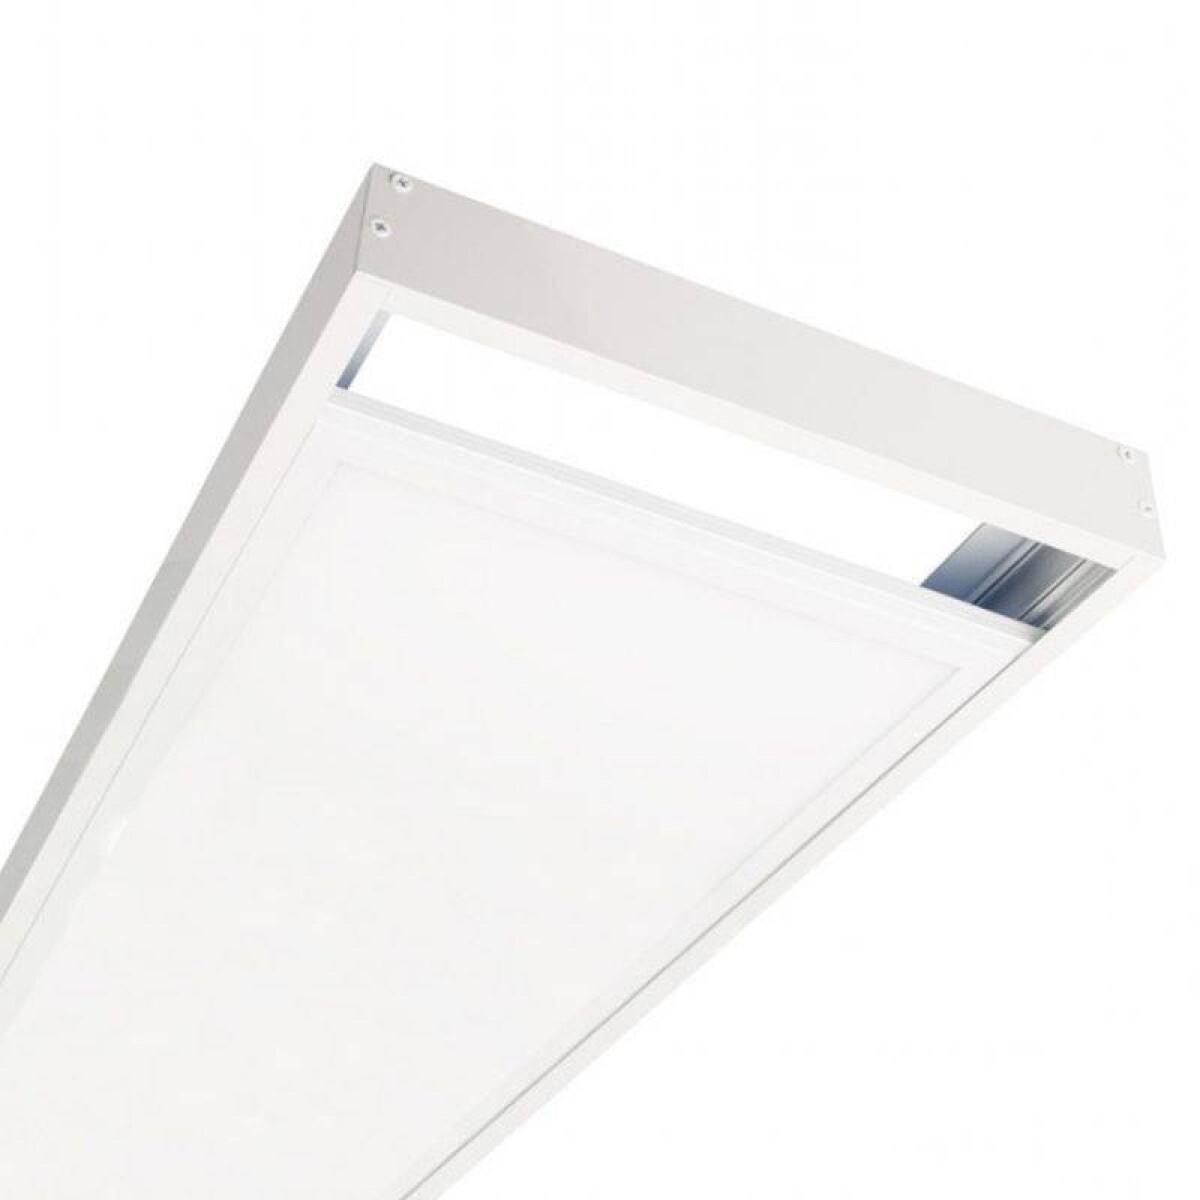 Panel led con marco para adosar 48w 119.5*29.5cm - Luz neutra 